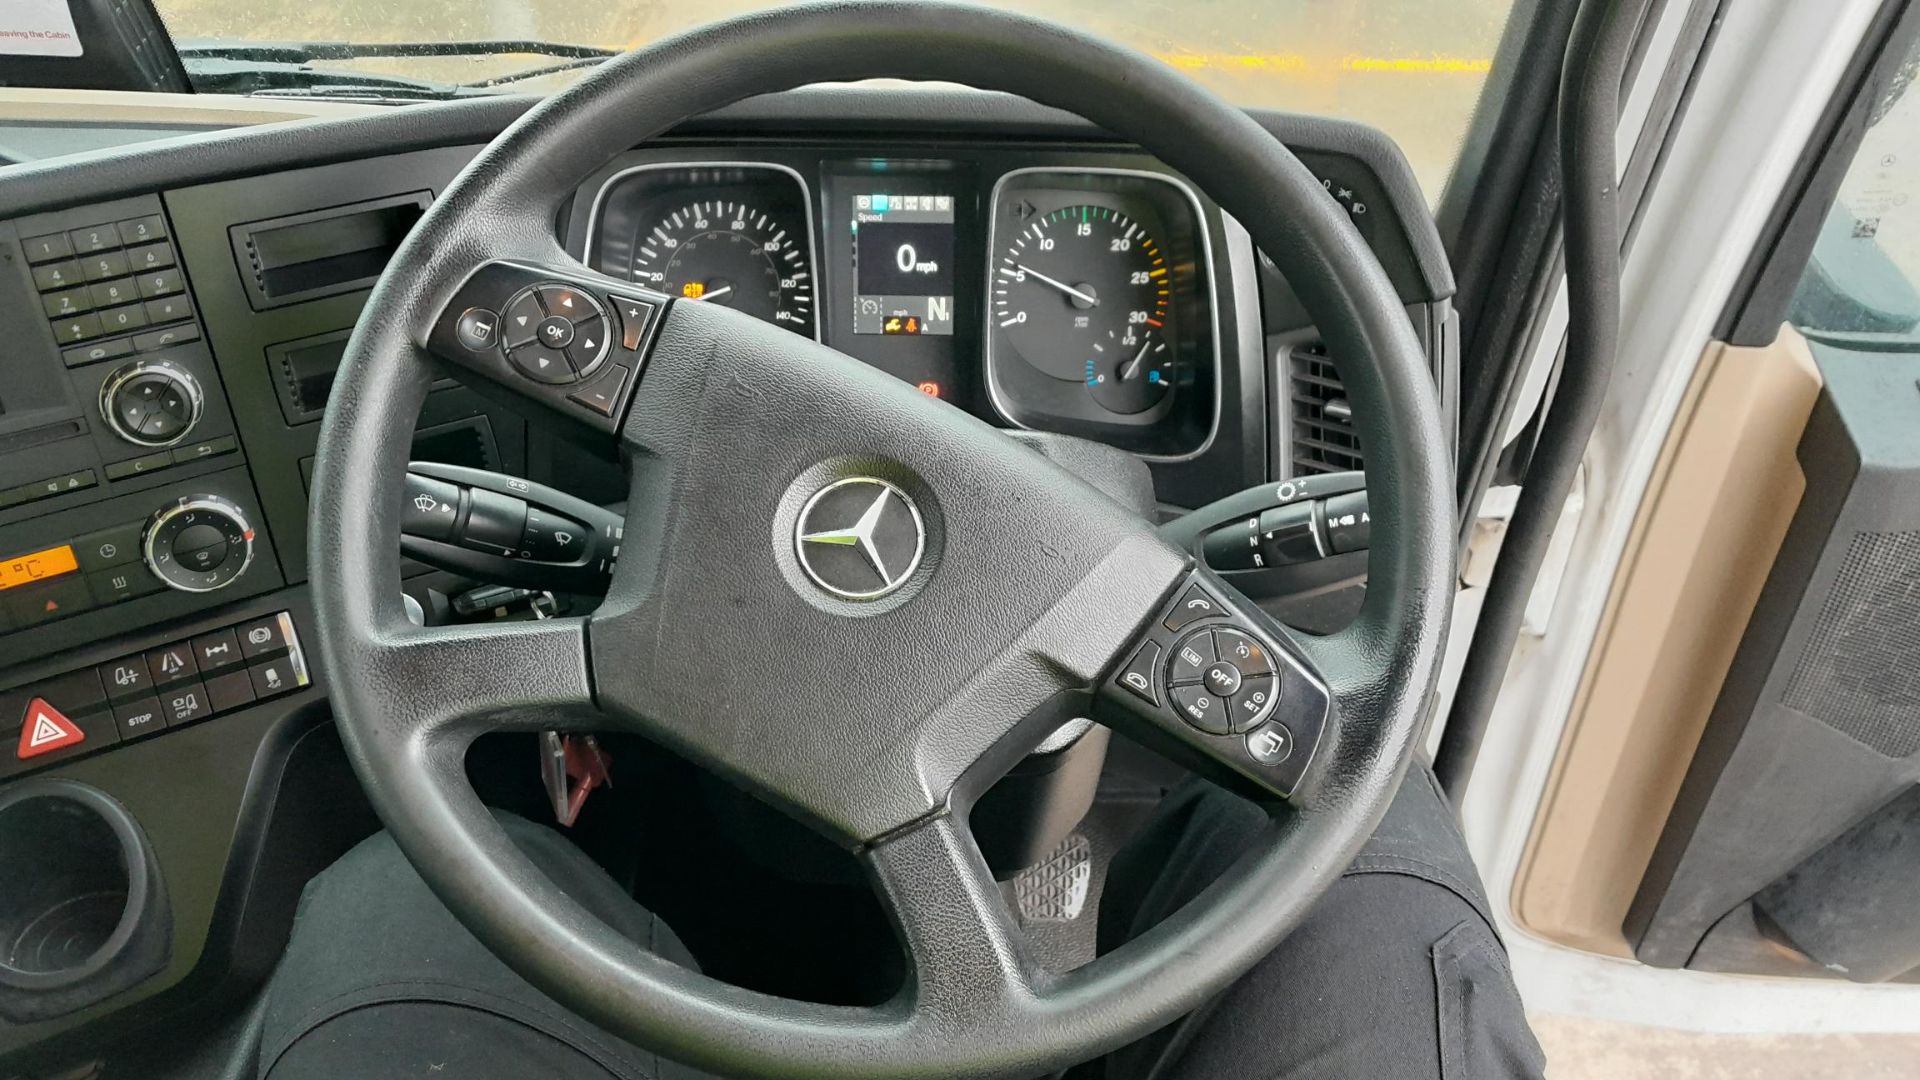 2018, Mercedes-Benz 1824 (VRN - WX18 MLL) - Bild 6 aus 11